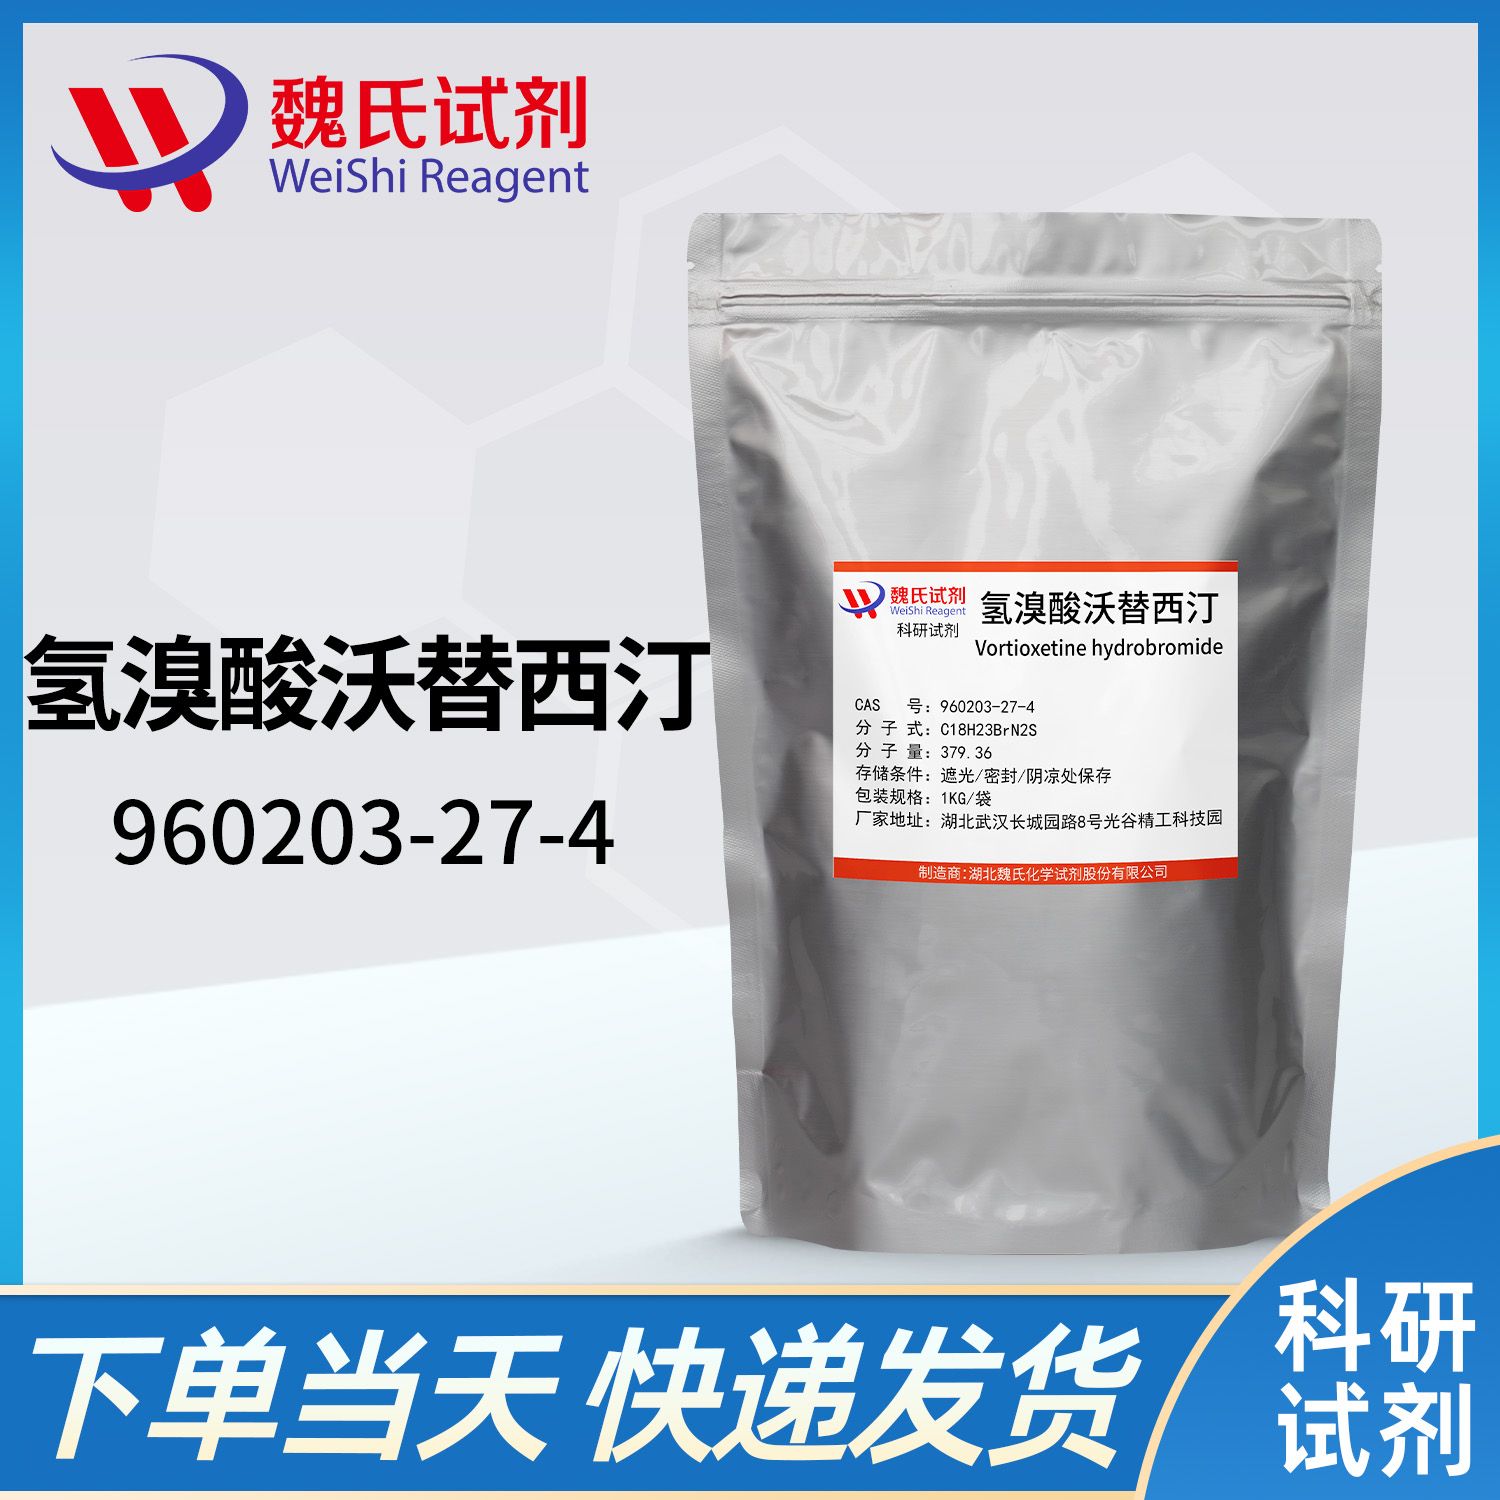 960203-27-4 /Vortioxetine hydrobromide